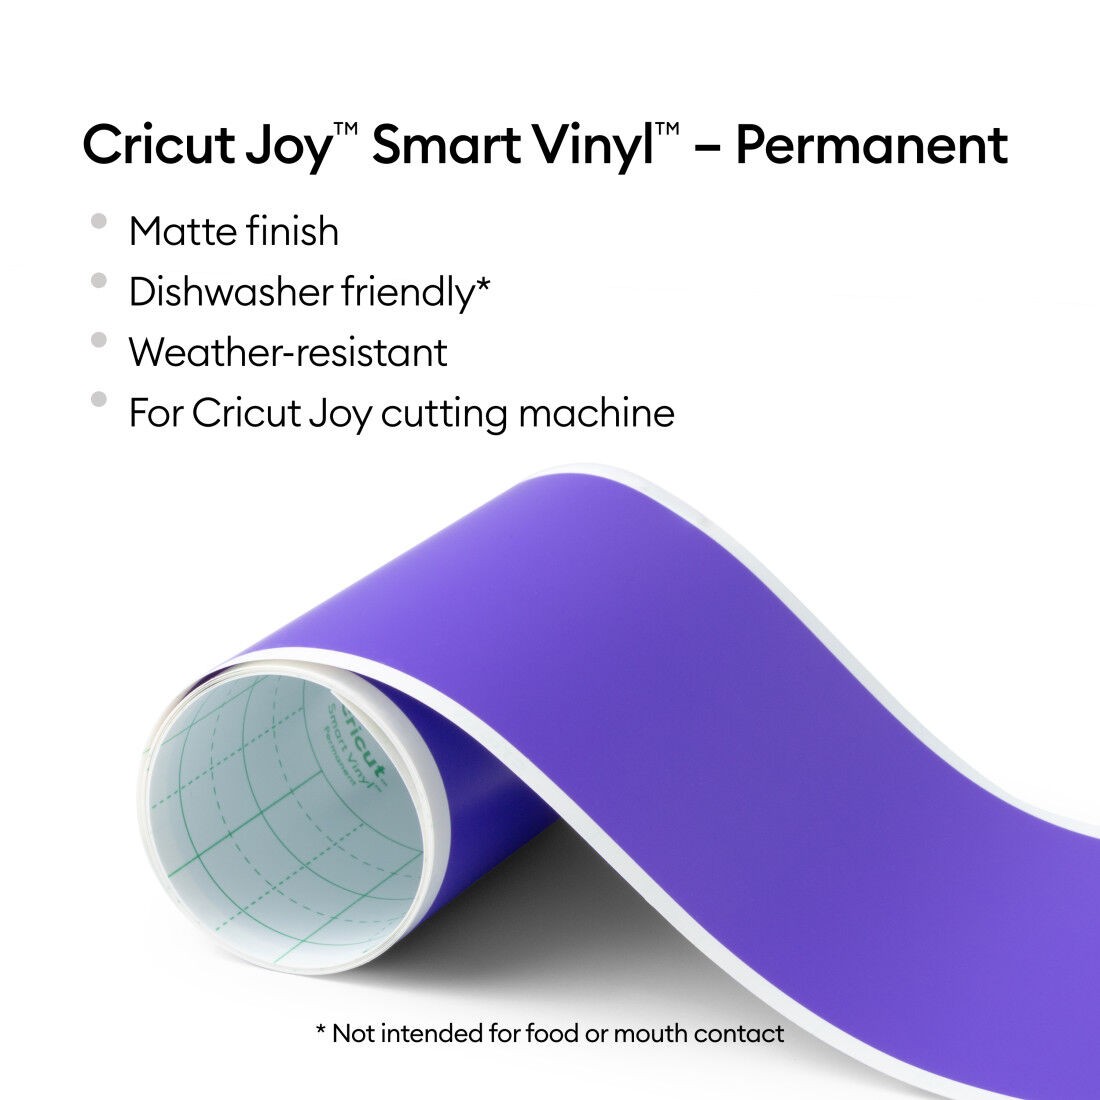 Cricut Joy Smart Vinyl - Permanent Vinyl